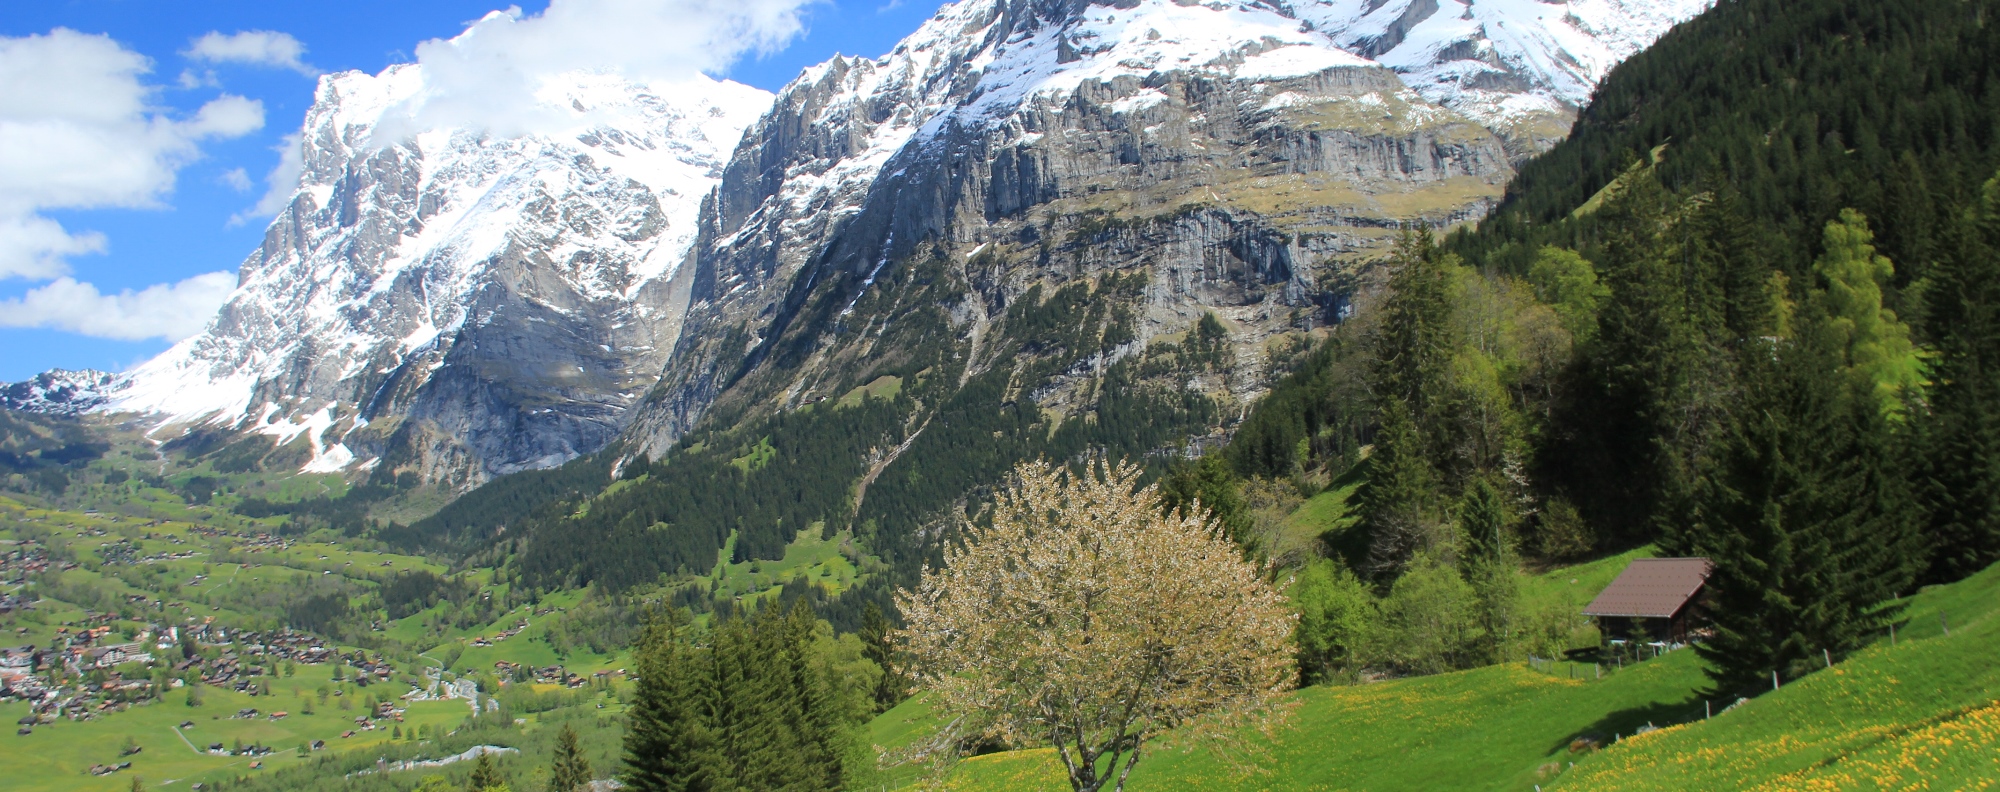 スイスアルプスのイメージ